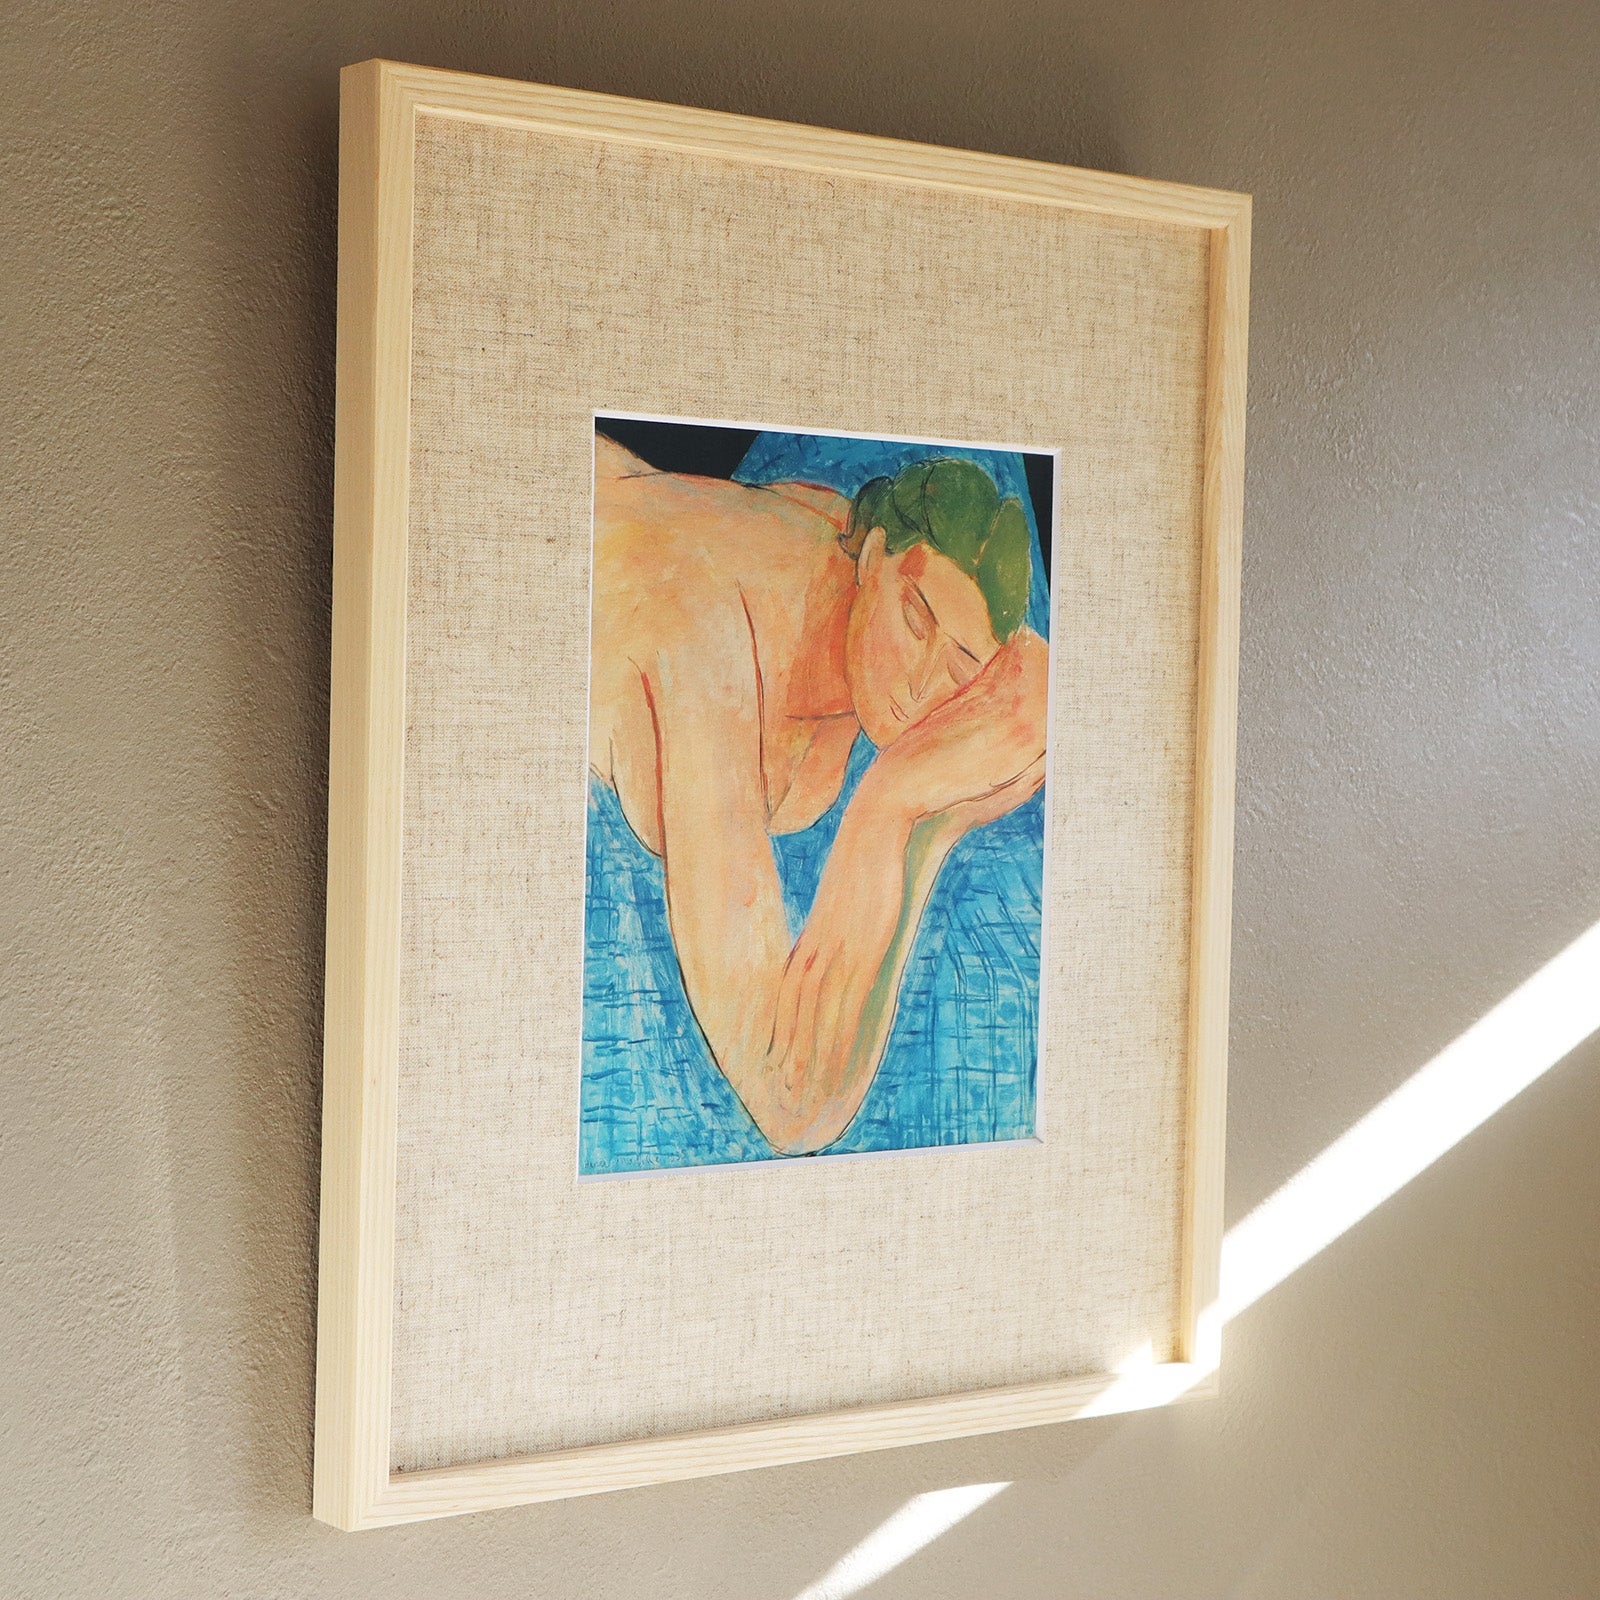 特価セール1935年 アンリ・マティス/Henri Matisse「バラ色の裸婦のための習作」/川端康成コレクション No.18/F3/3号(油彩画)(サインあり)6h-6-028 人物画